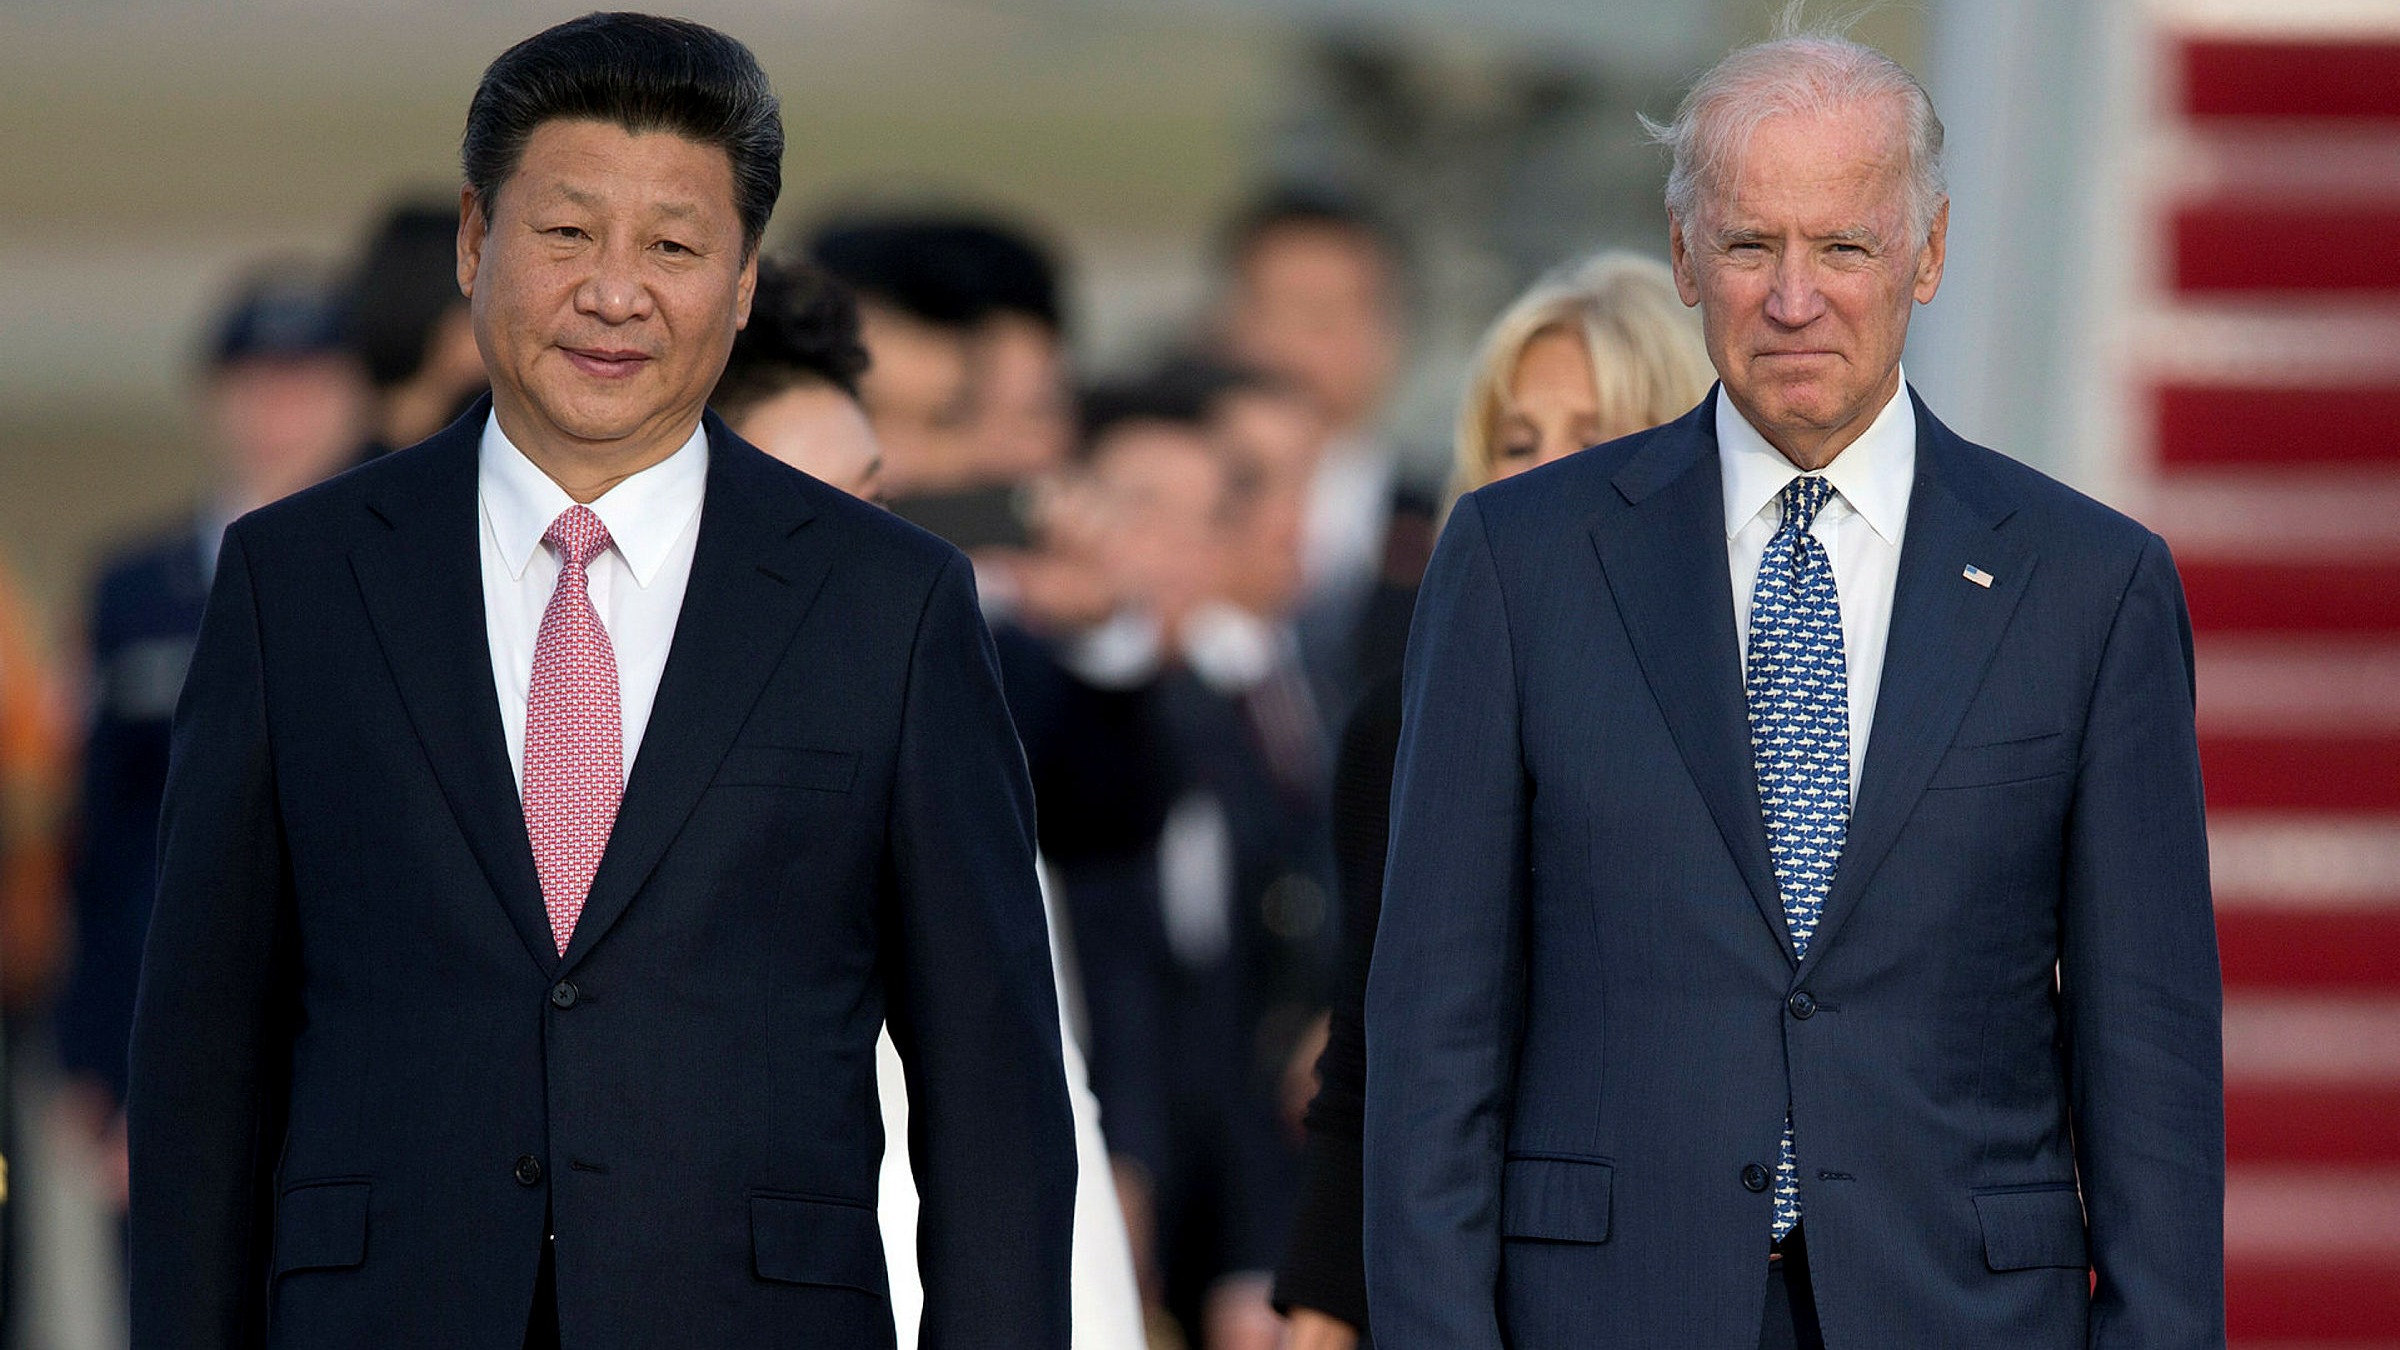 Xi Jinping et Joe Biden